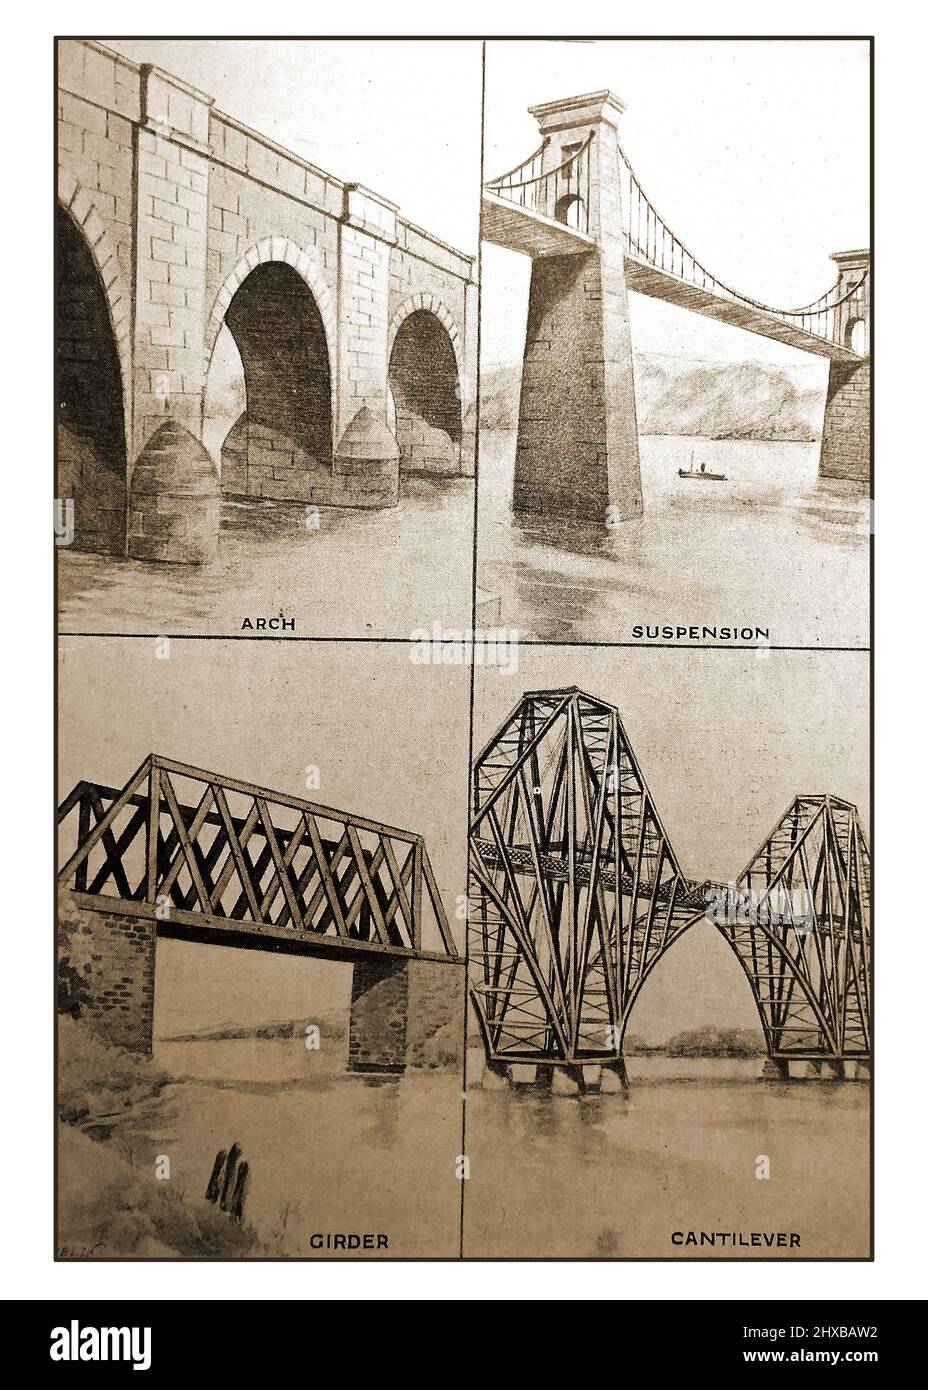 Ein frühes britisches Bild, das verschiedene Arten von Brückenkonstruktionen illustriert - Bogen, Aufhängung, Träger und Ausleger. Stockfoto